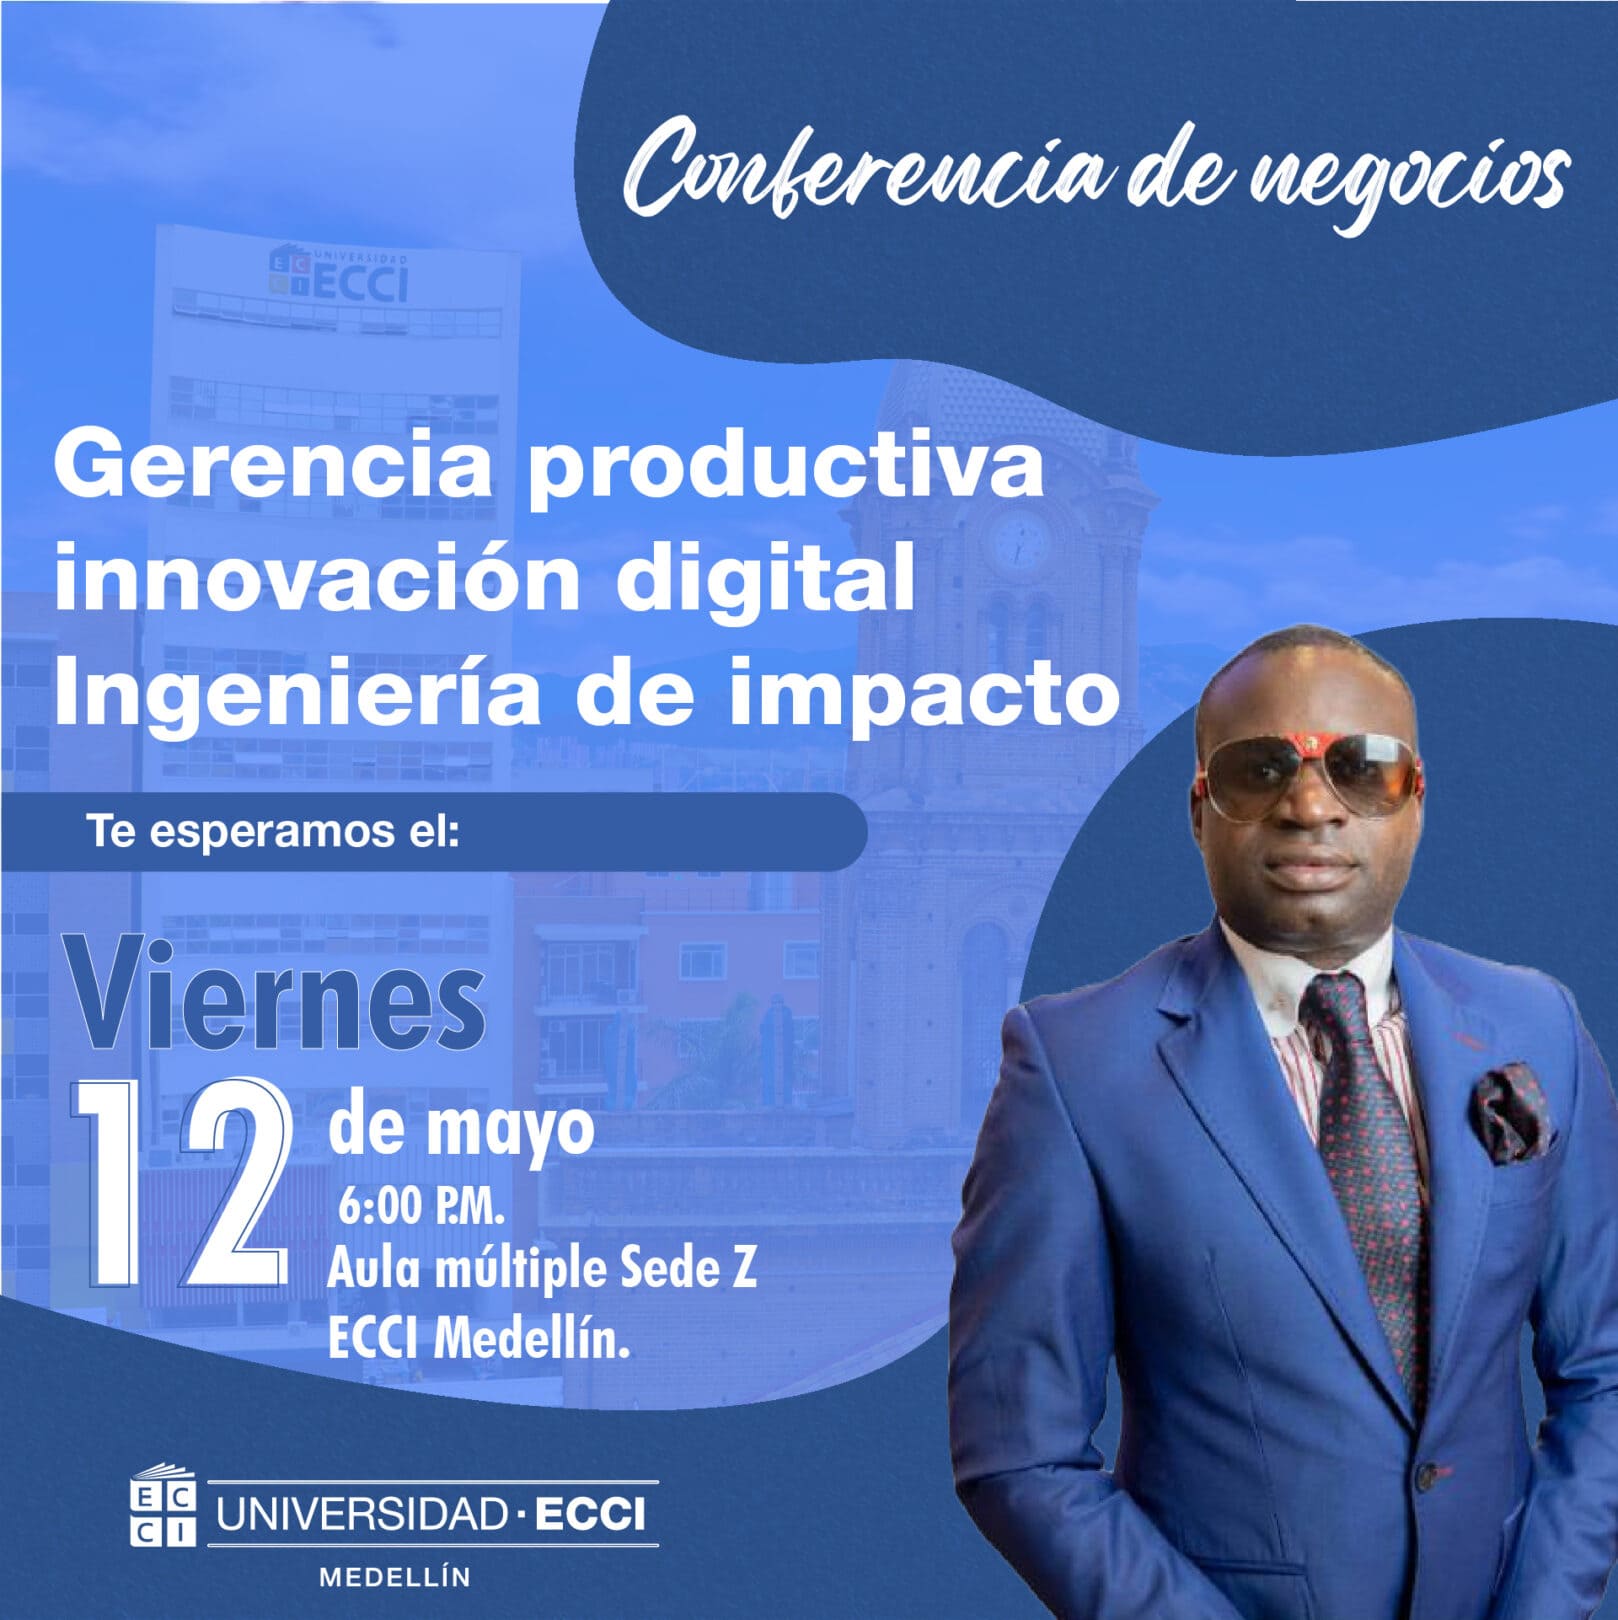 Conferencia de negocios: Ingeniería de impacto, gerencia productiva, innovación digital.